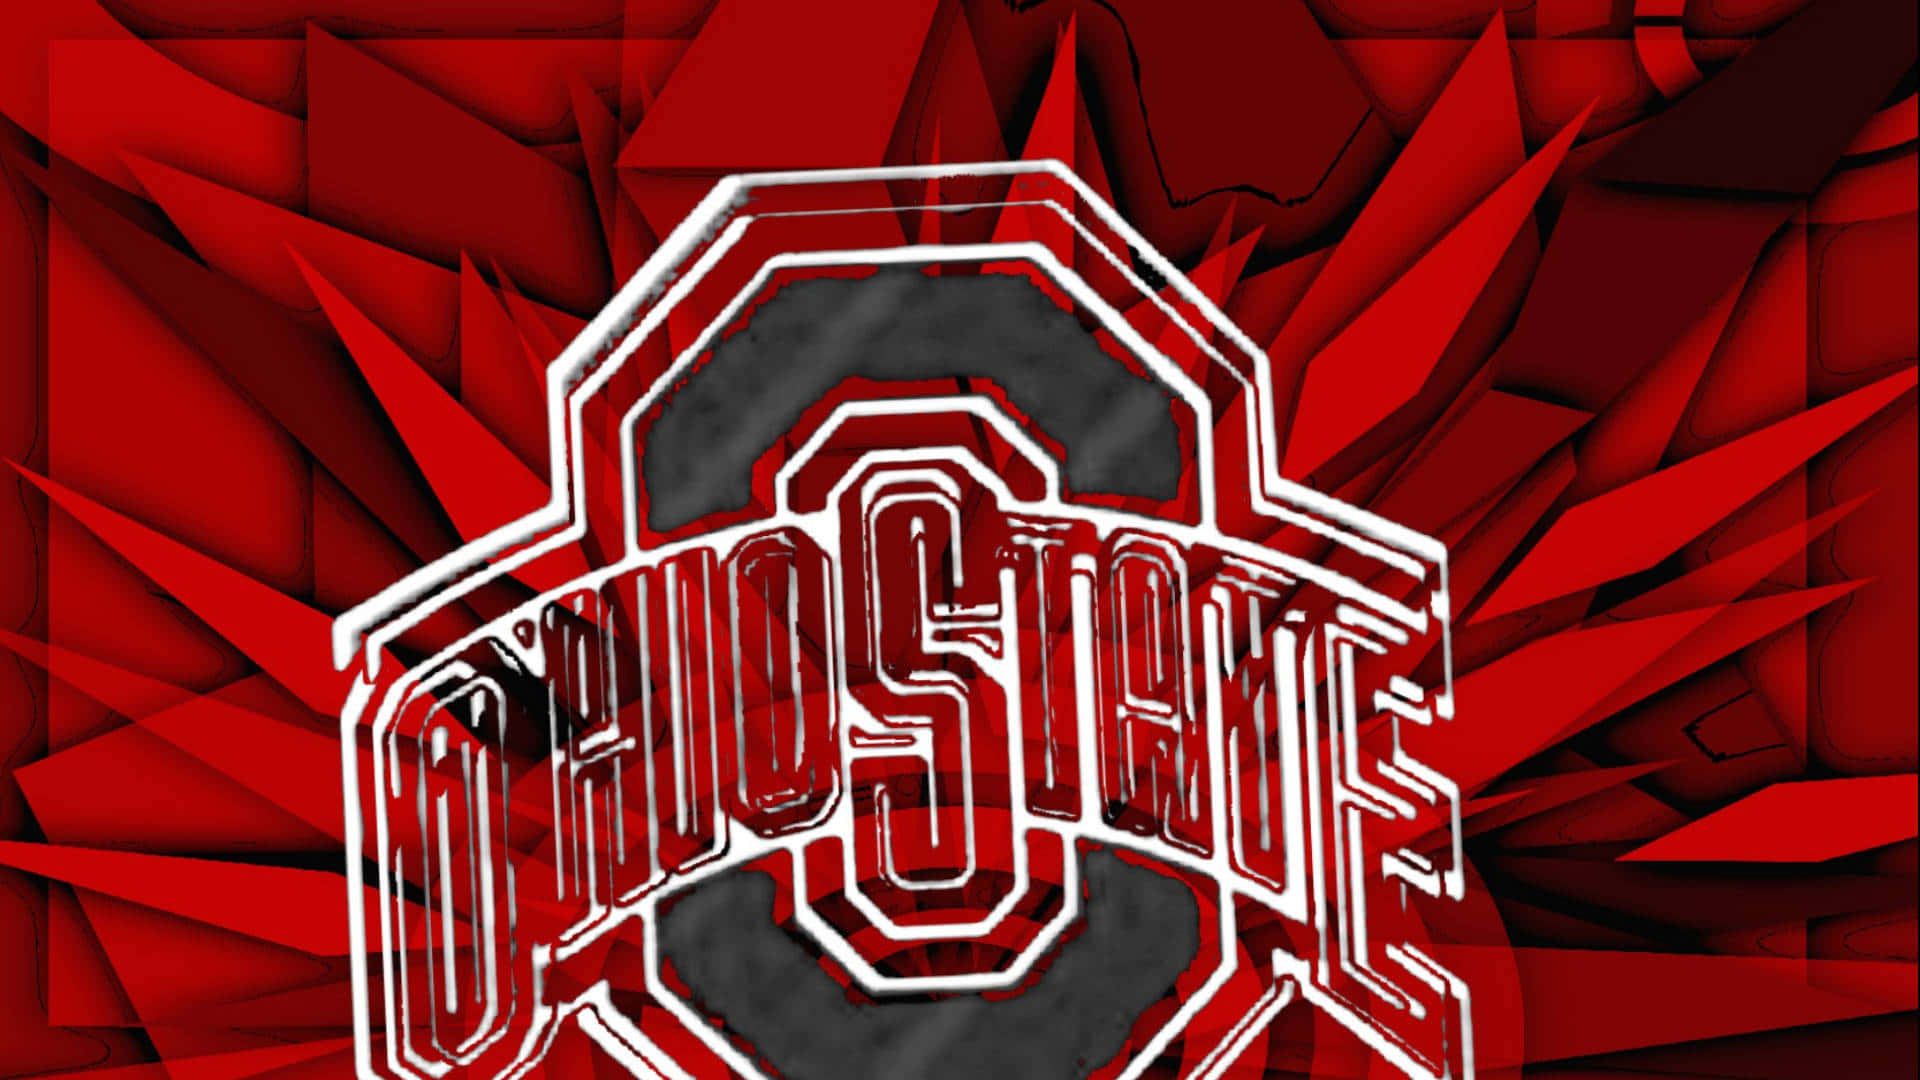 Logode Ohio State En Un Fondo Rojo Fondo de pantalla